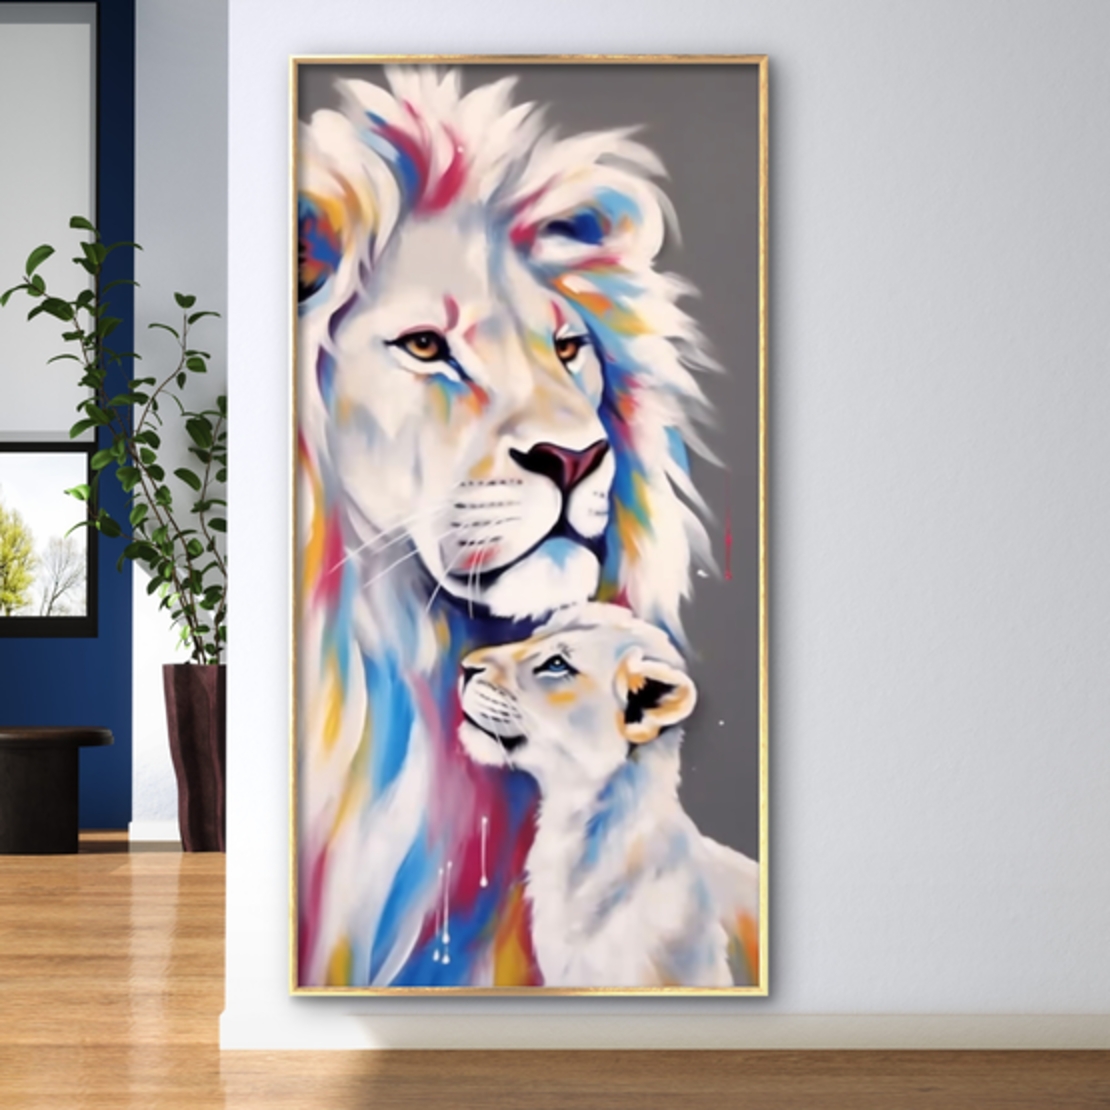 תמונת קנבס מקורית לאורך מיוחדת אריה וגור צבעוני  דגם 611233